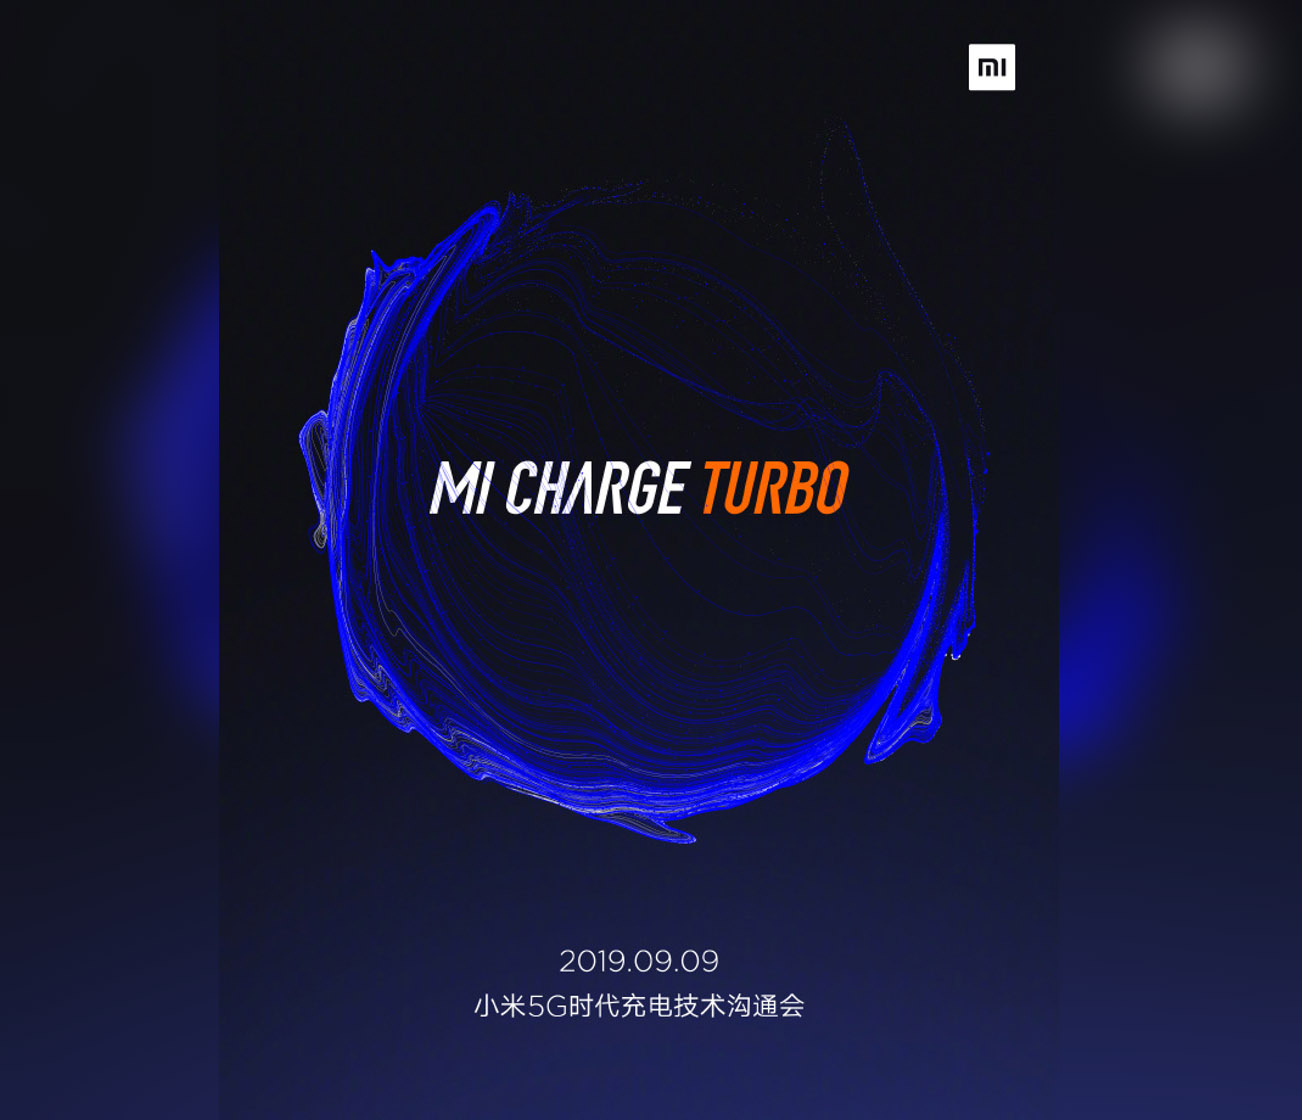 ستقدم Xiaomi جهاز الشحن السريع Mi Charge Turbo في 9 سبتمبر